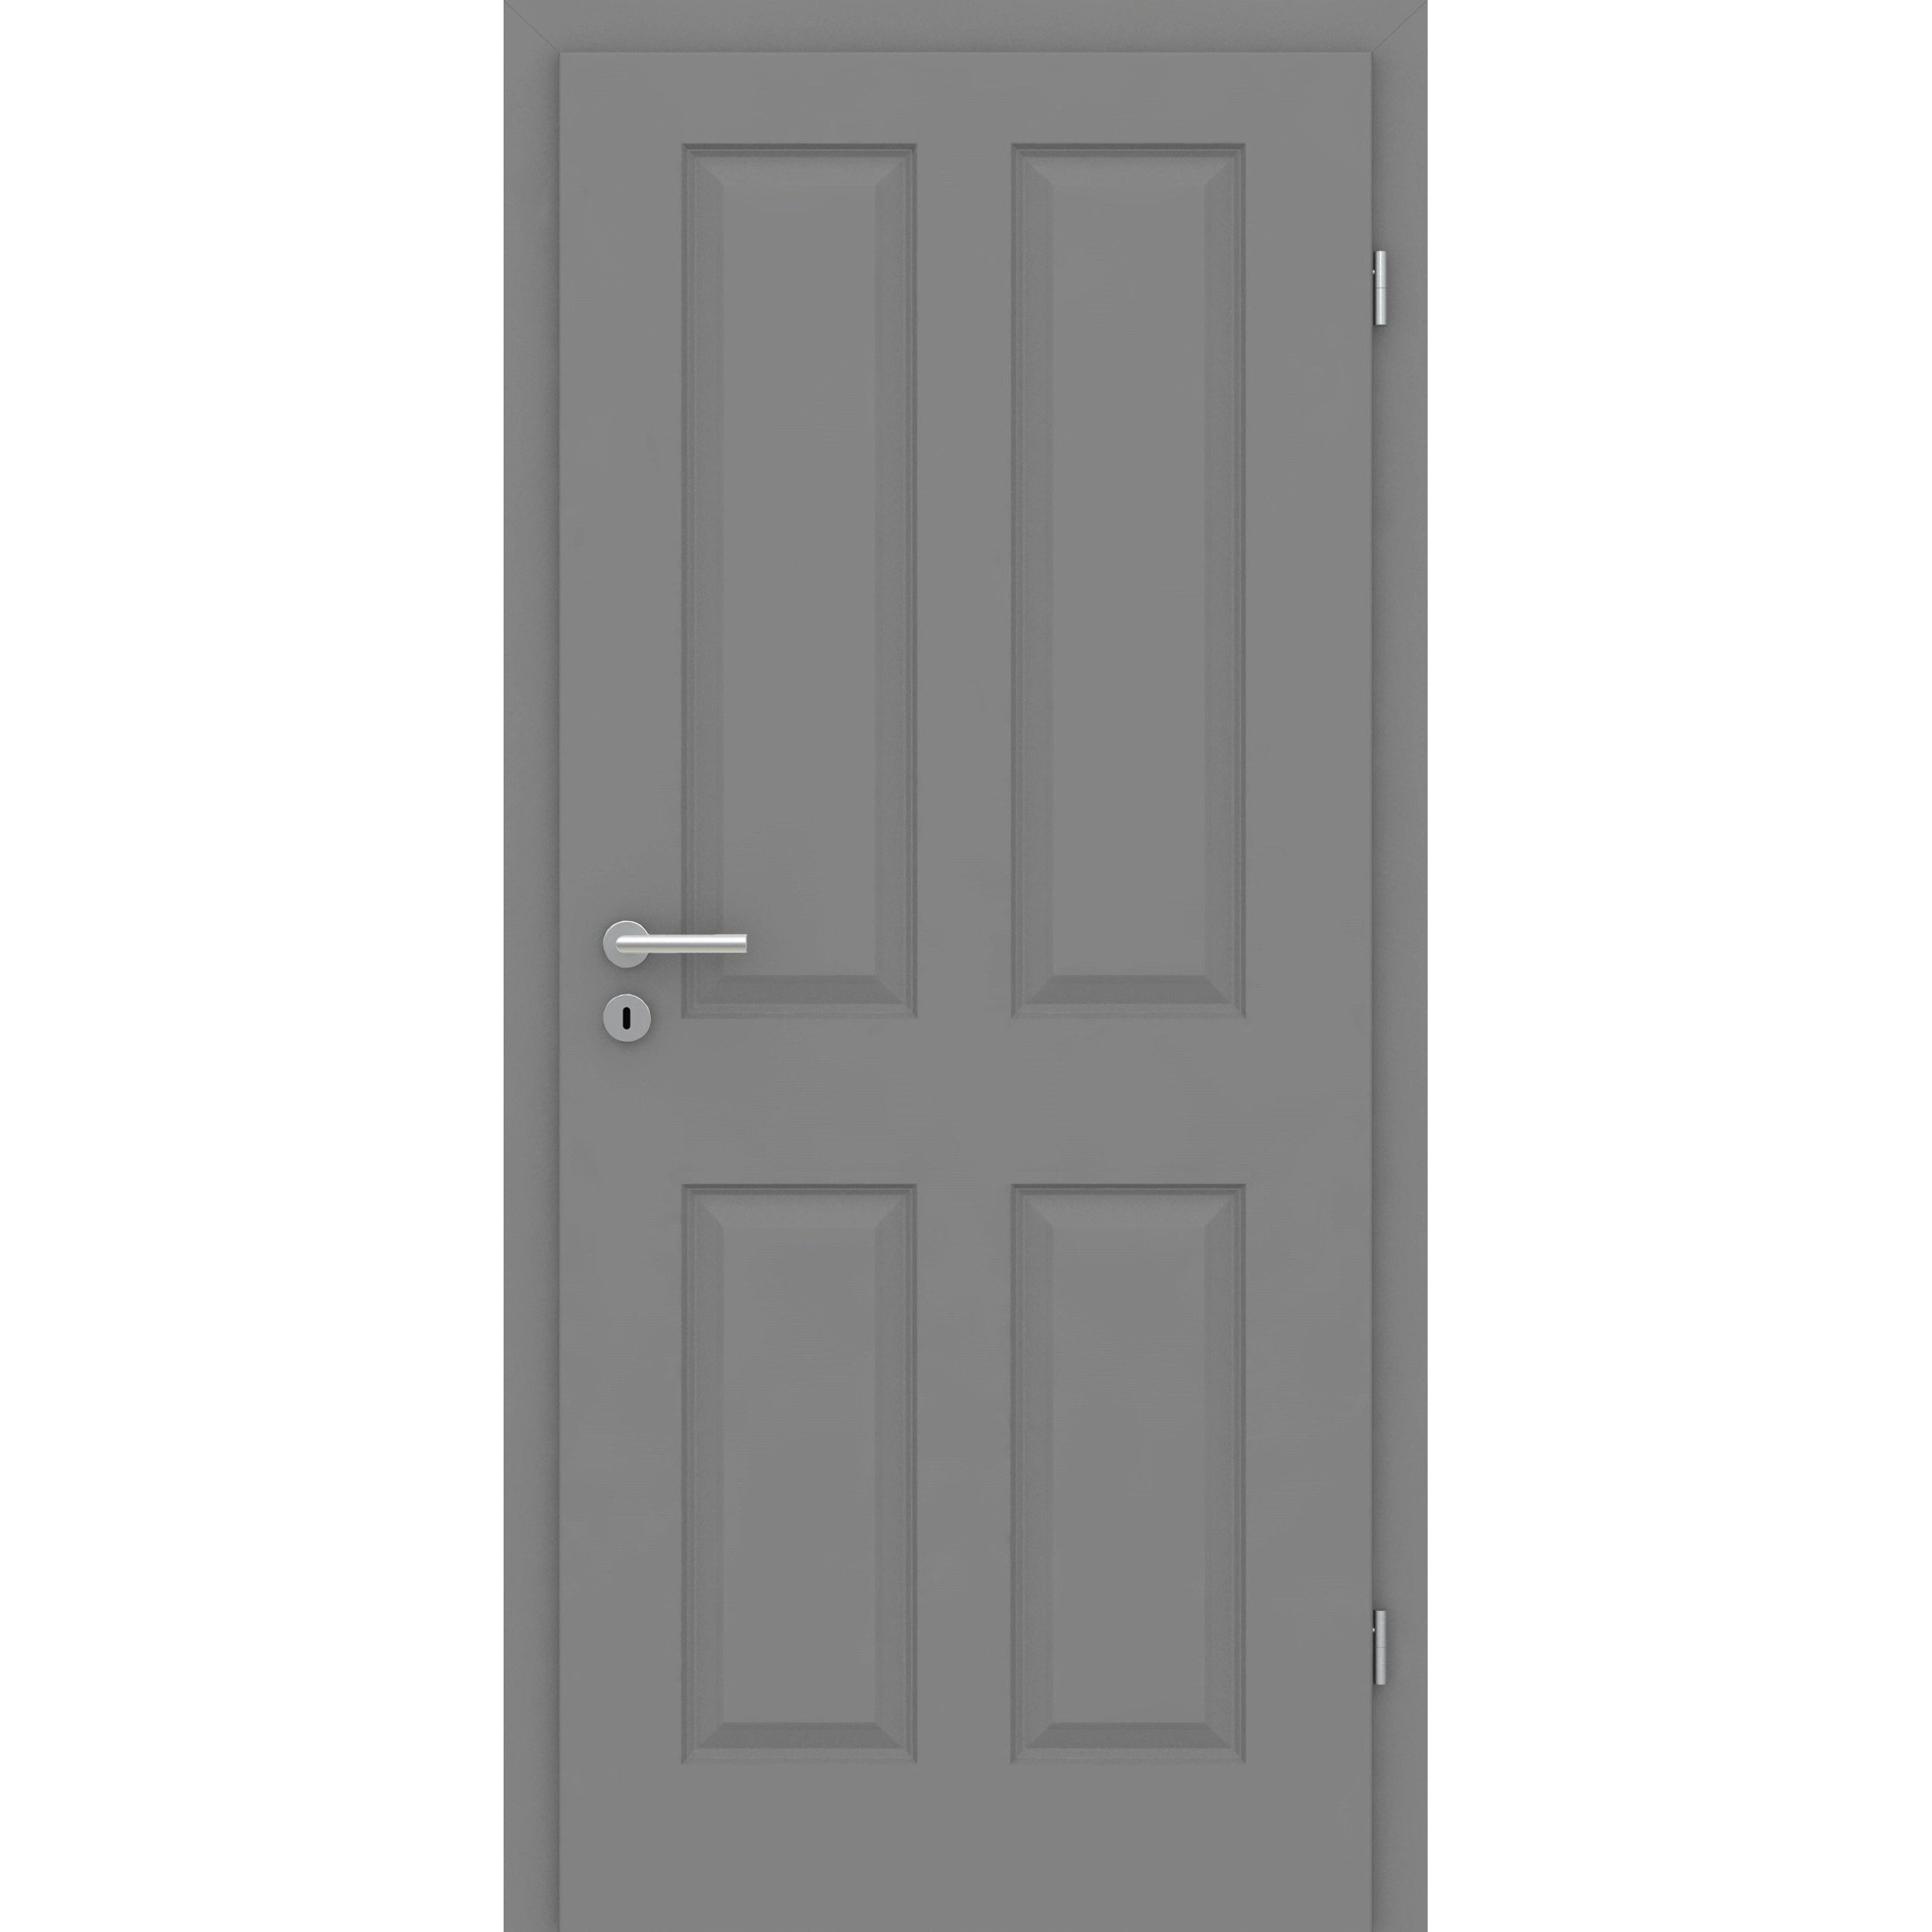 Zimmertür mit Zarge grau 4 Kassetten Designkante - Modell Stiltür K47